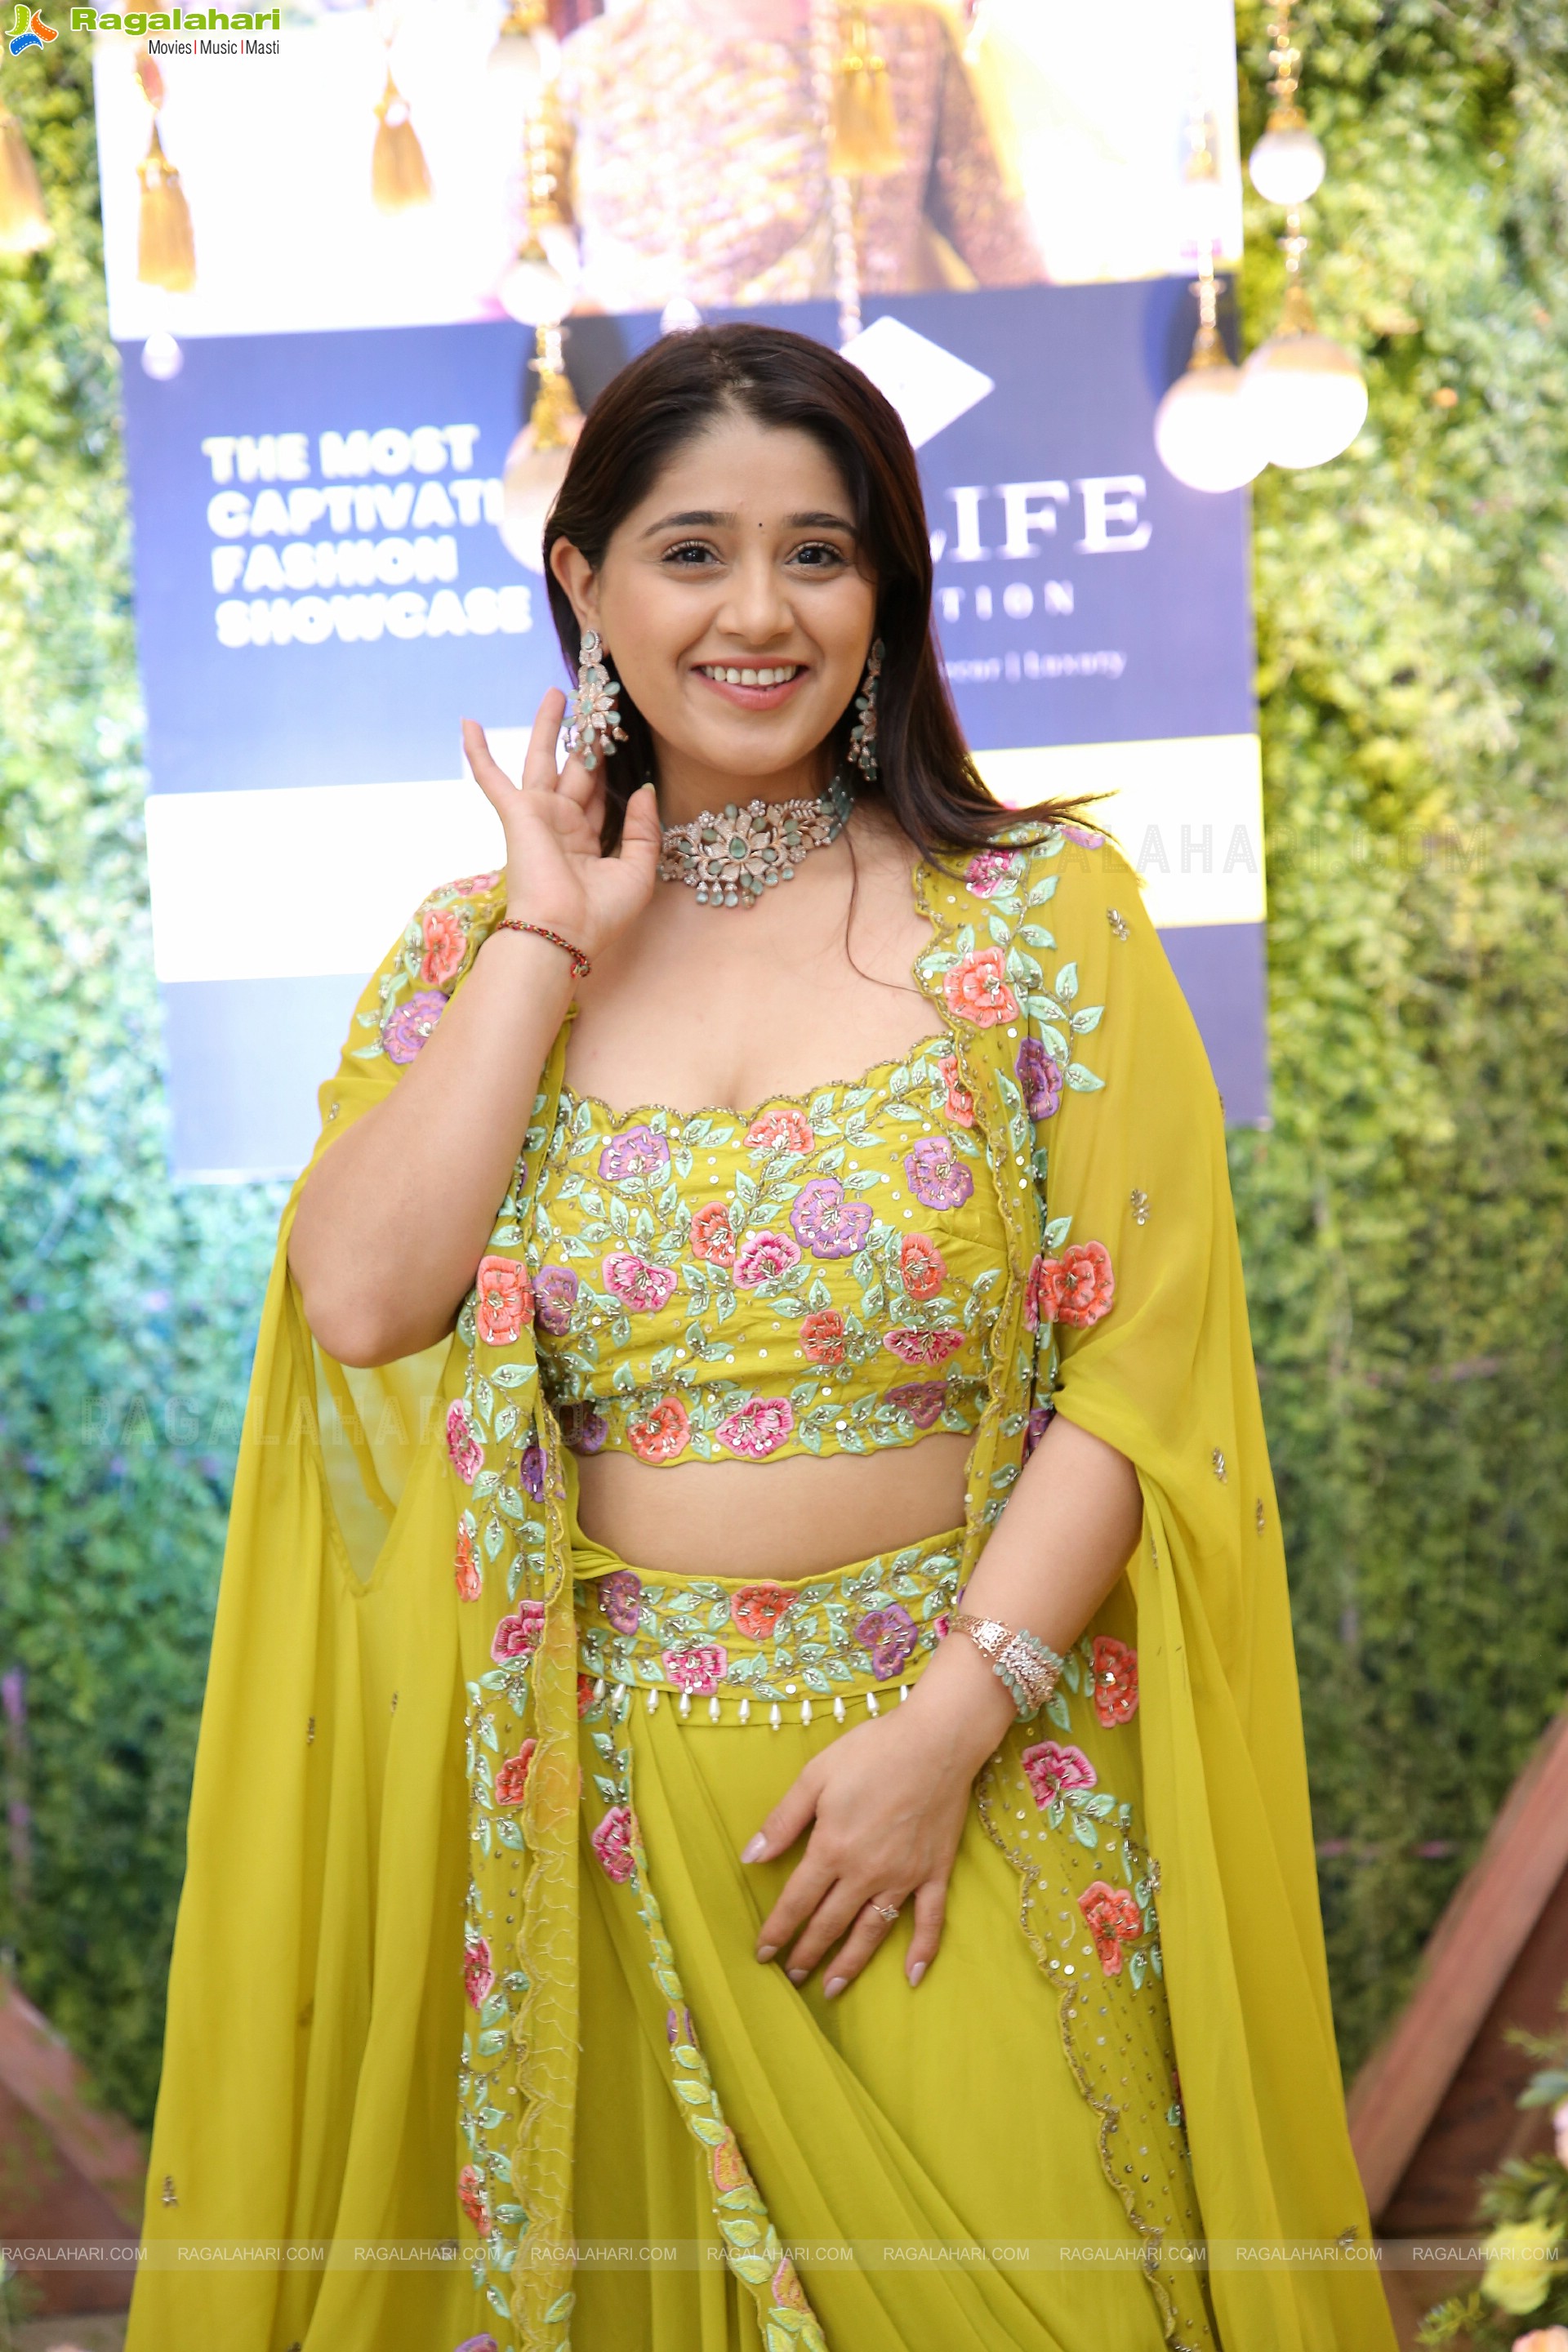 Chandni Bhagwanani in Designer Yellow Lehenga Choli, HD Photo Gallery